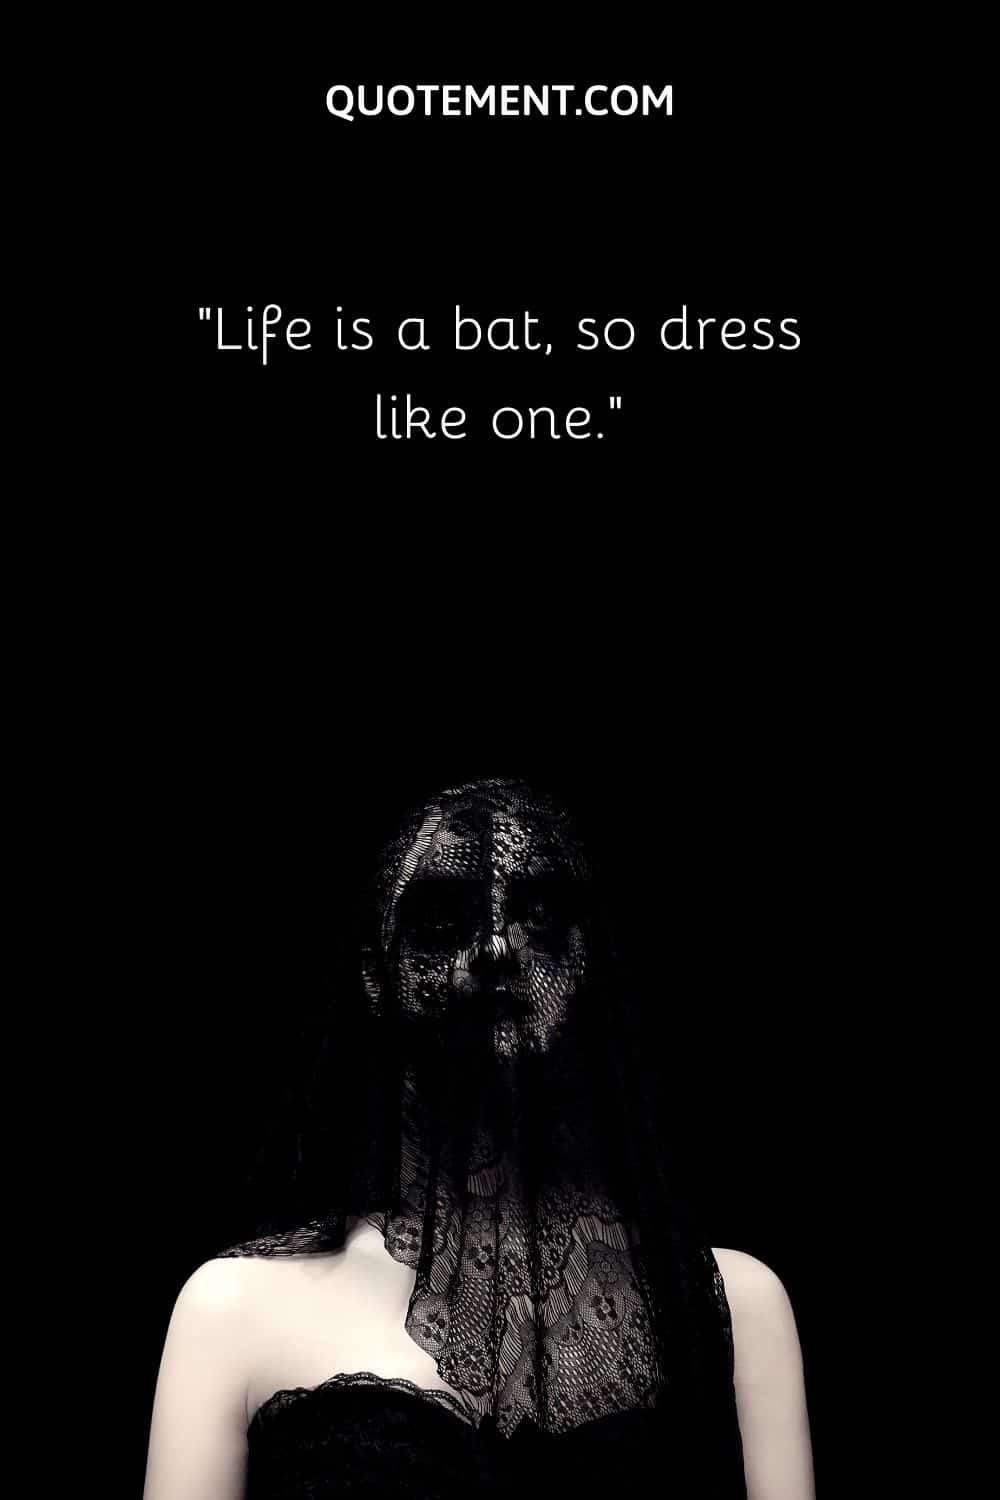 Life is a bat, so dress like one